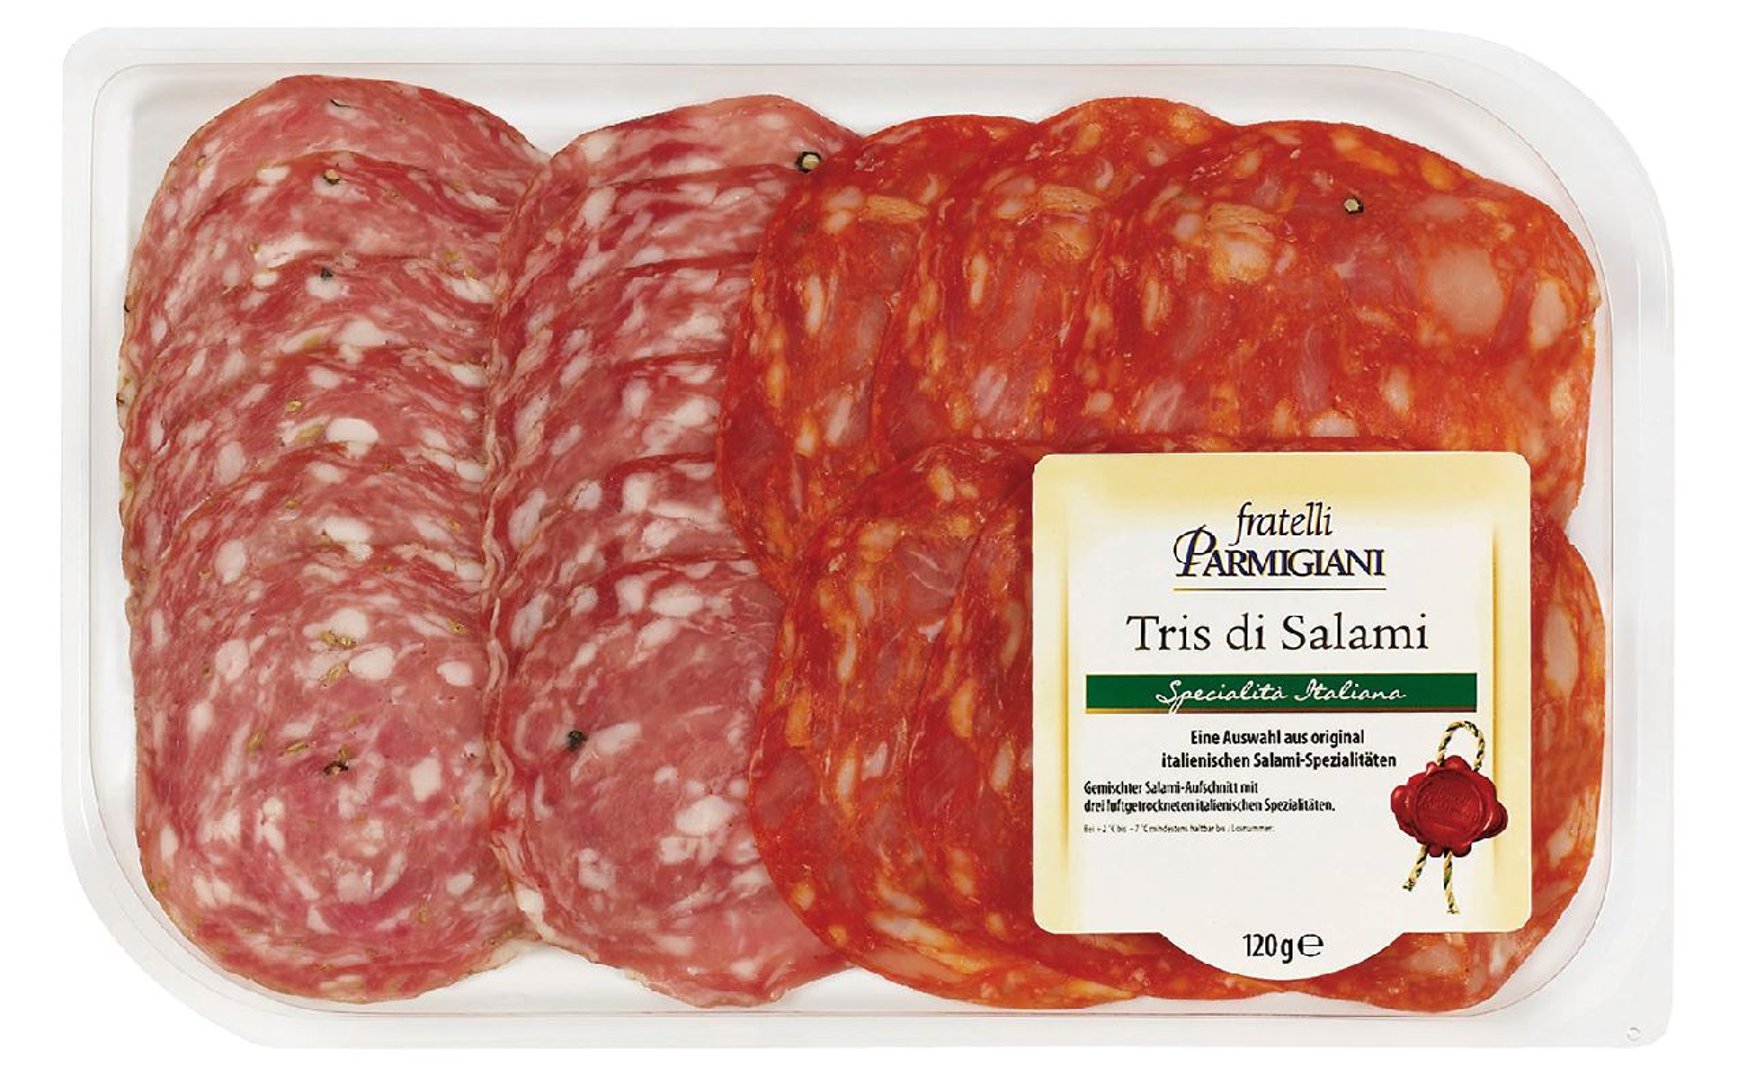 Fratelli Parmigiani - Tris di Salami - 120 g Packung